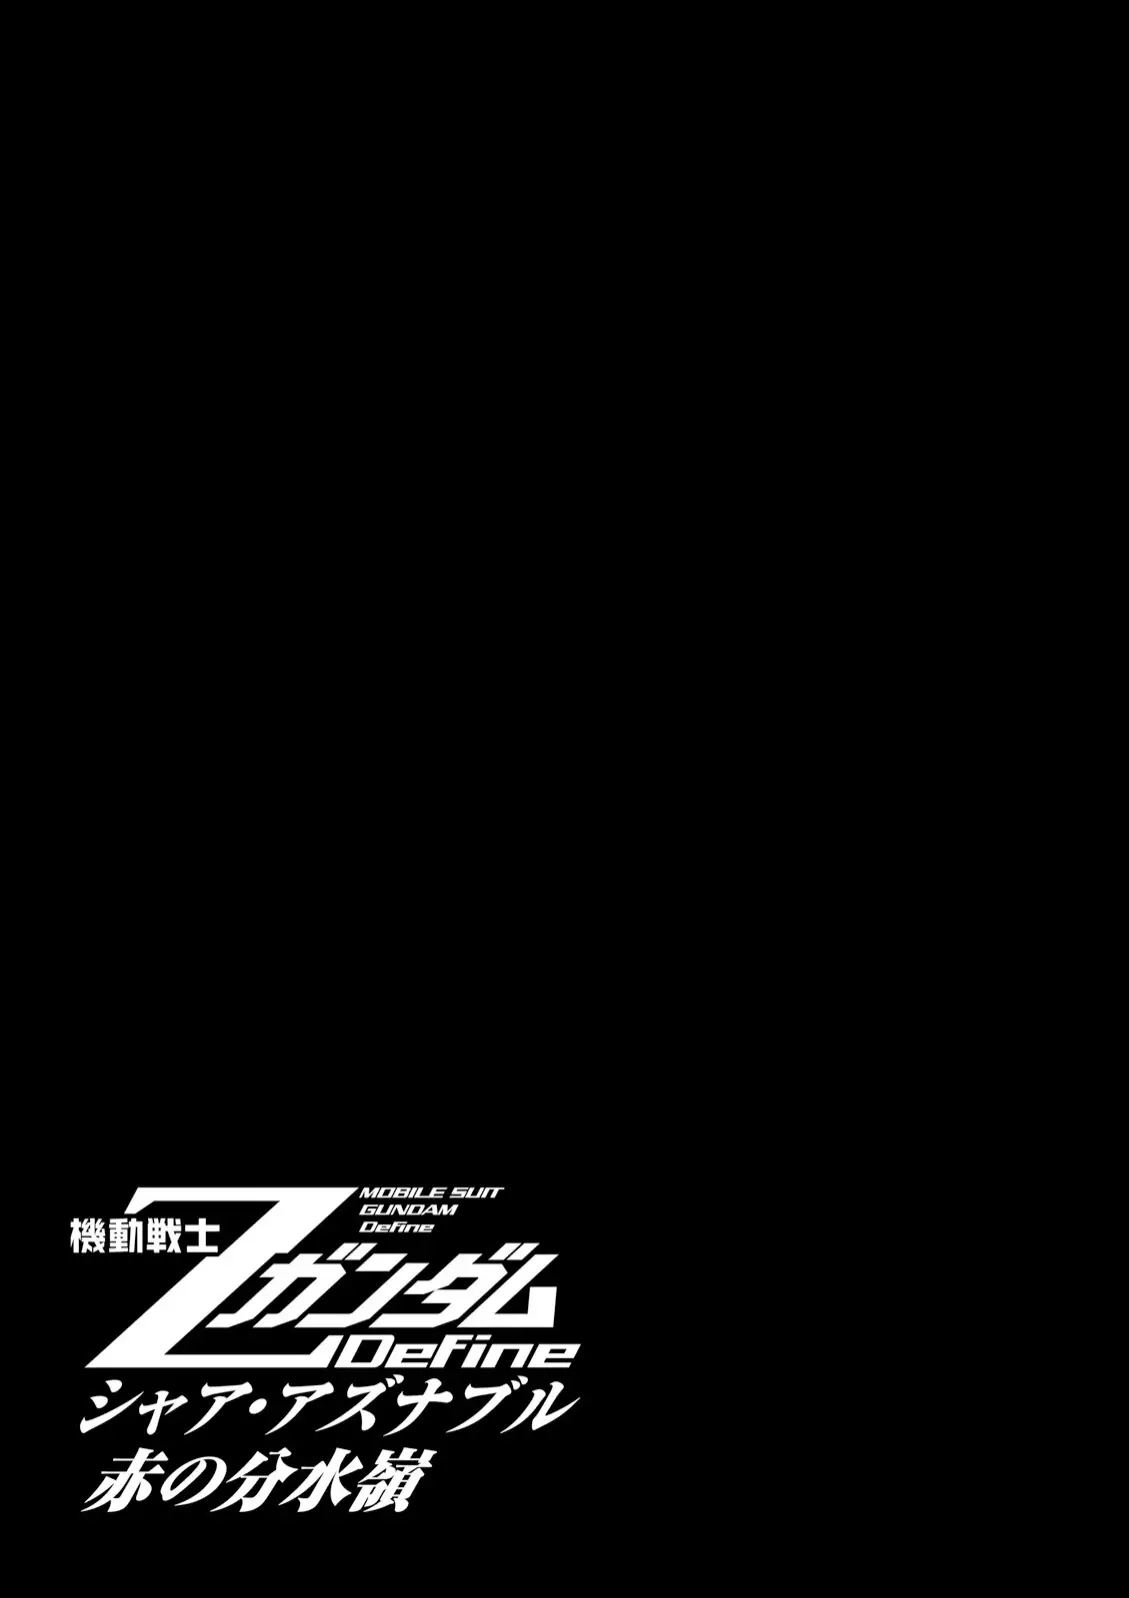 Mobile Suit Zeta Gundam - Define - 51 page 1-9a232e8b